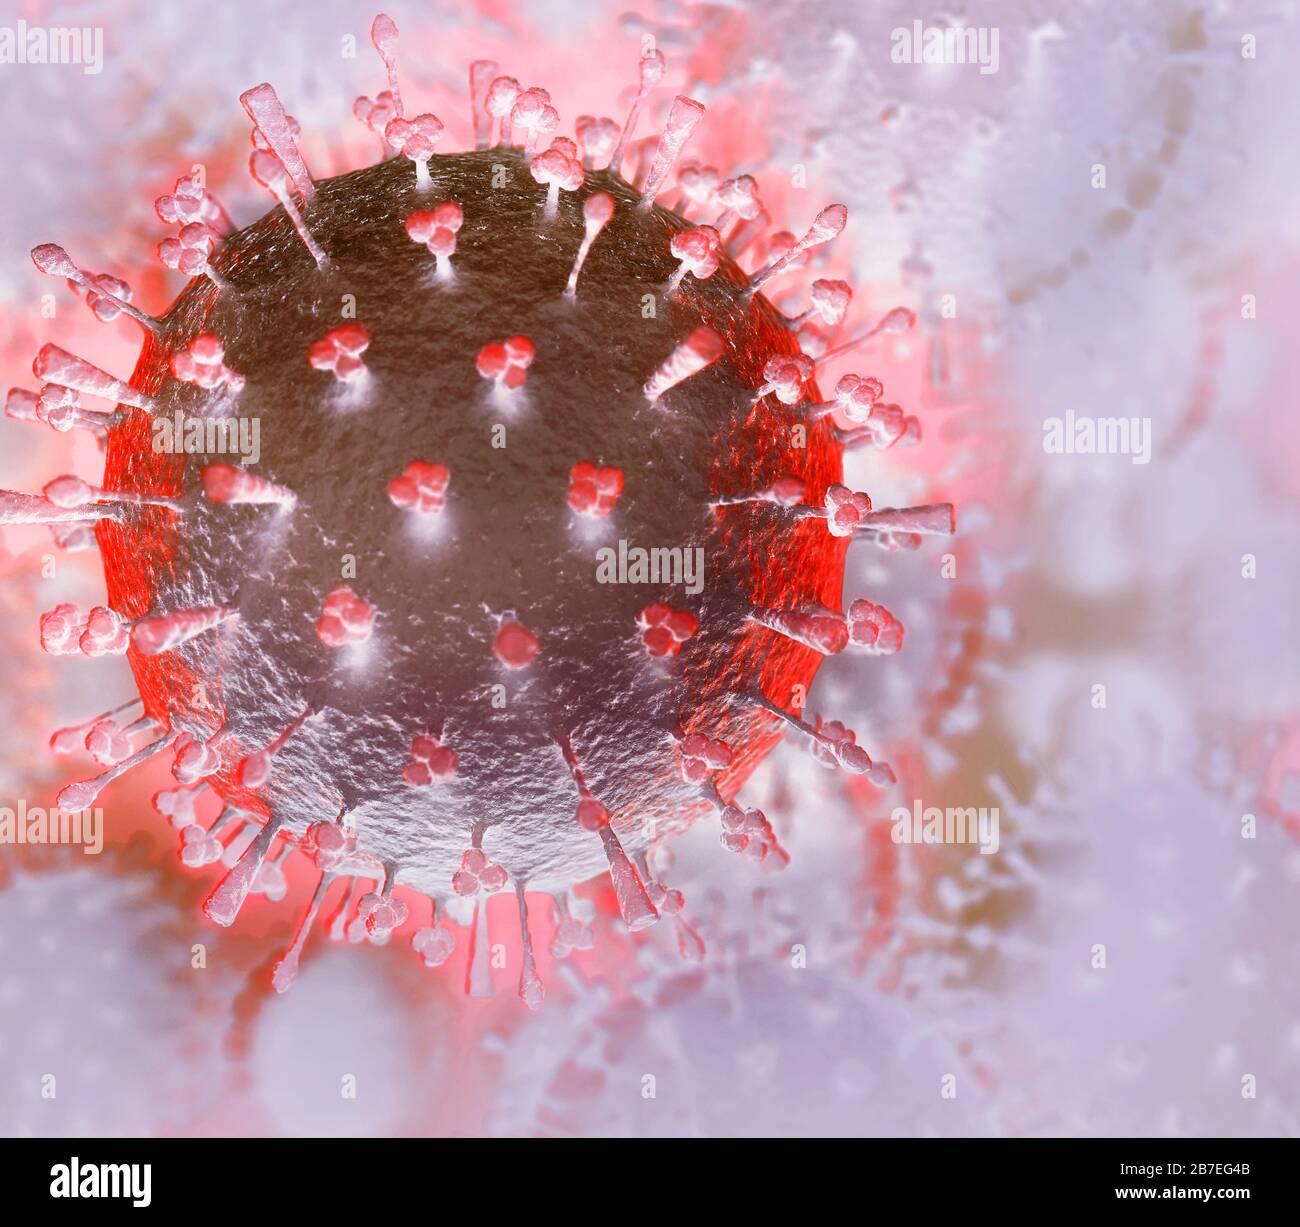 Coronavirus, COVID-19, künstlerische Darstellung in hellen Farben. Corona Viruspartikel konzeptionelle 3D-Abbildung. Verbreitung von Virus, Epidemie und Pandemie Stockfoto